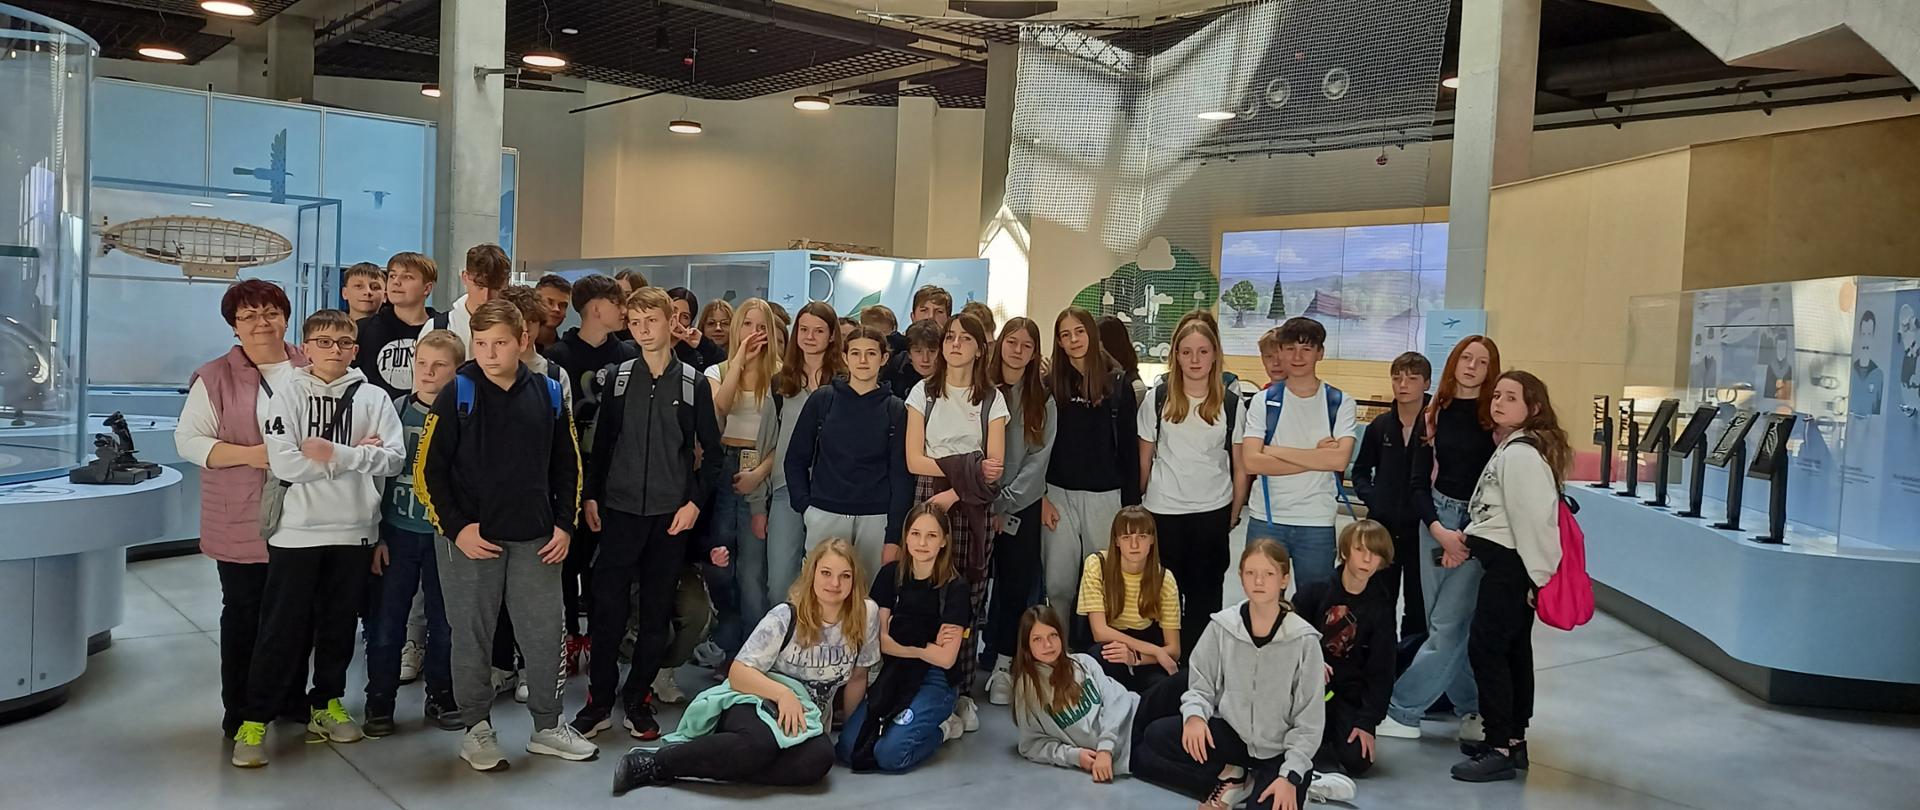 Wszyscy uczestnicy wycieczki z klas 6,7, 8a i 8b do Podkarpackiego Centrum Nauki- Łukasiewicz na tle wystawy o lotnictwie.